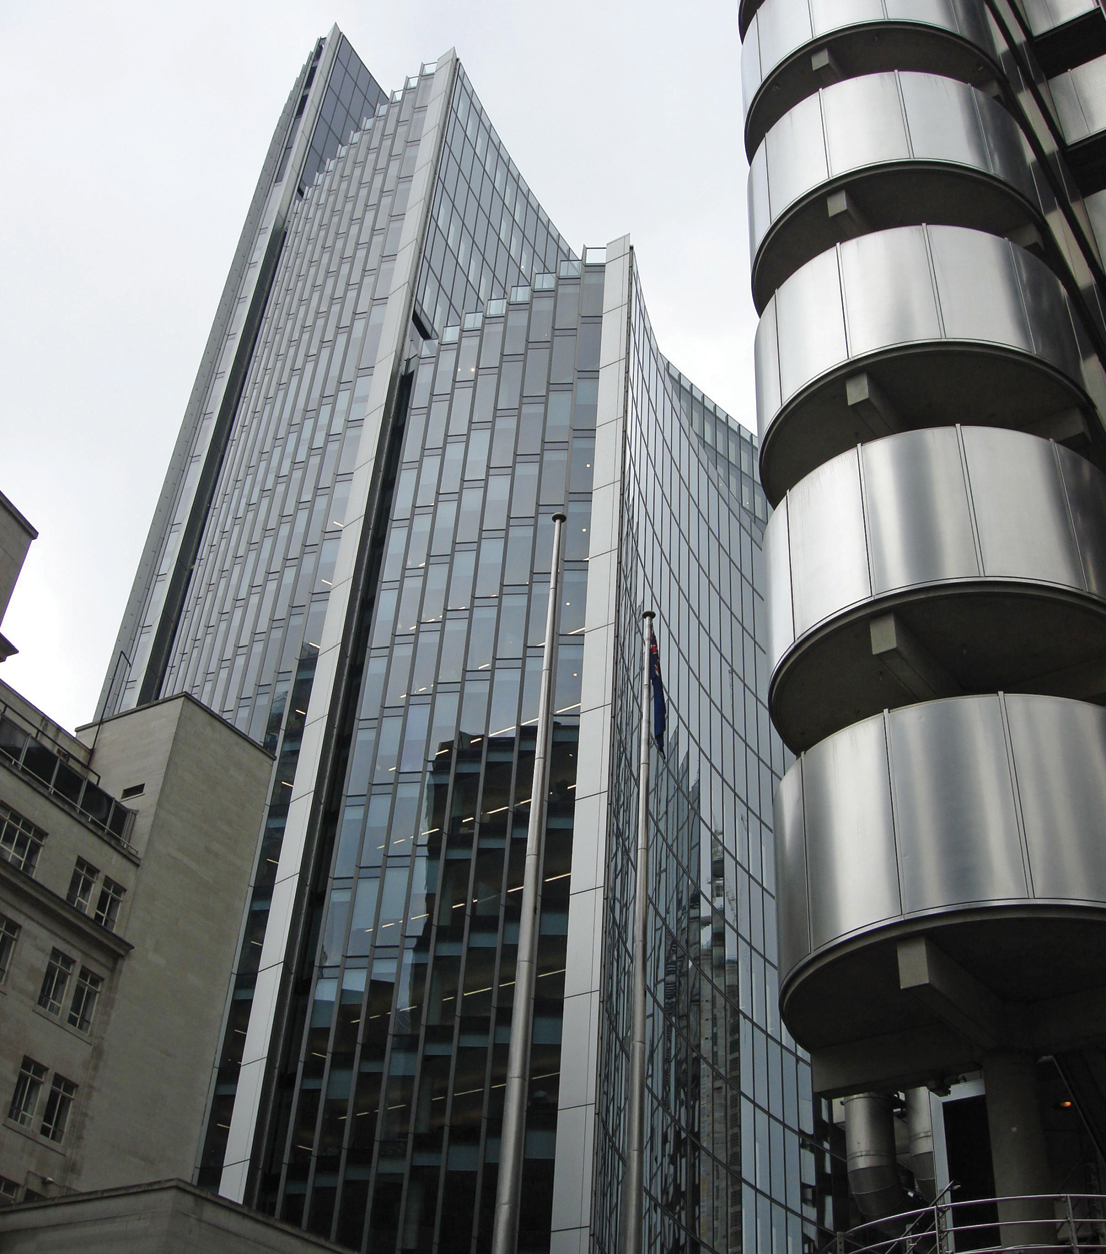 Сугубо технические формы Ллойд билдинга (фрагмент справа) своей динамикой как бы заставляют вгибаться вовнутрь стены соседнего здания, расположенного слишком близко, Лондон